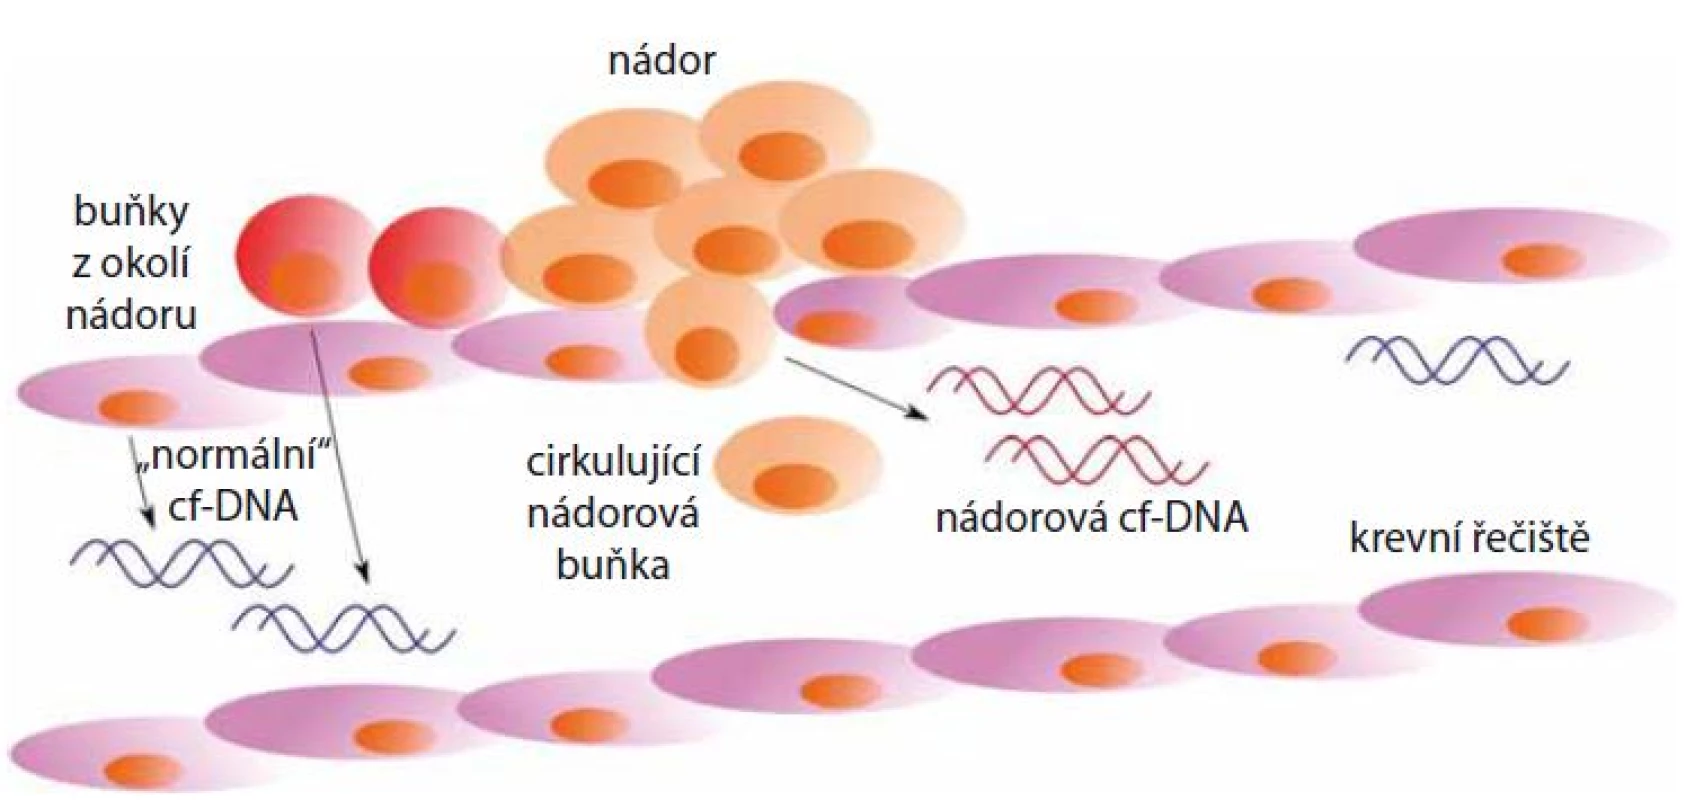 Uvolňování cf-DNA nekrózou z nádorových buněk do krevního řečiště. Do krevního oběhu je také uvolňována cf-DNA z buněk v okolí nádoru.